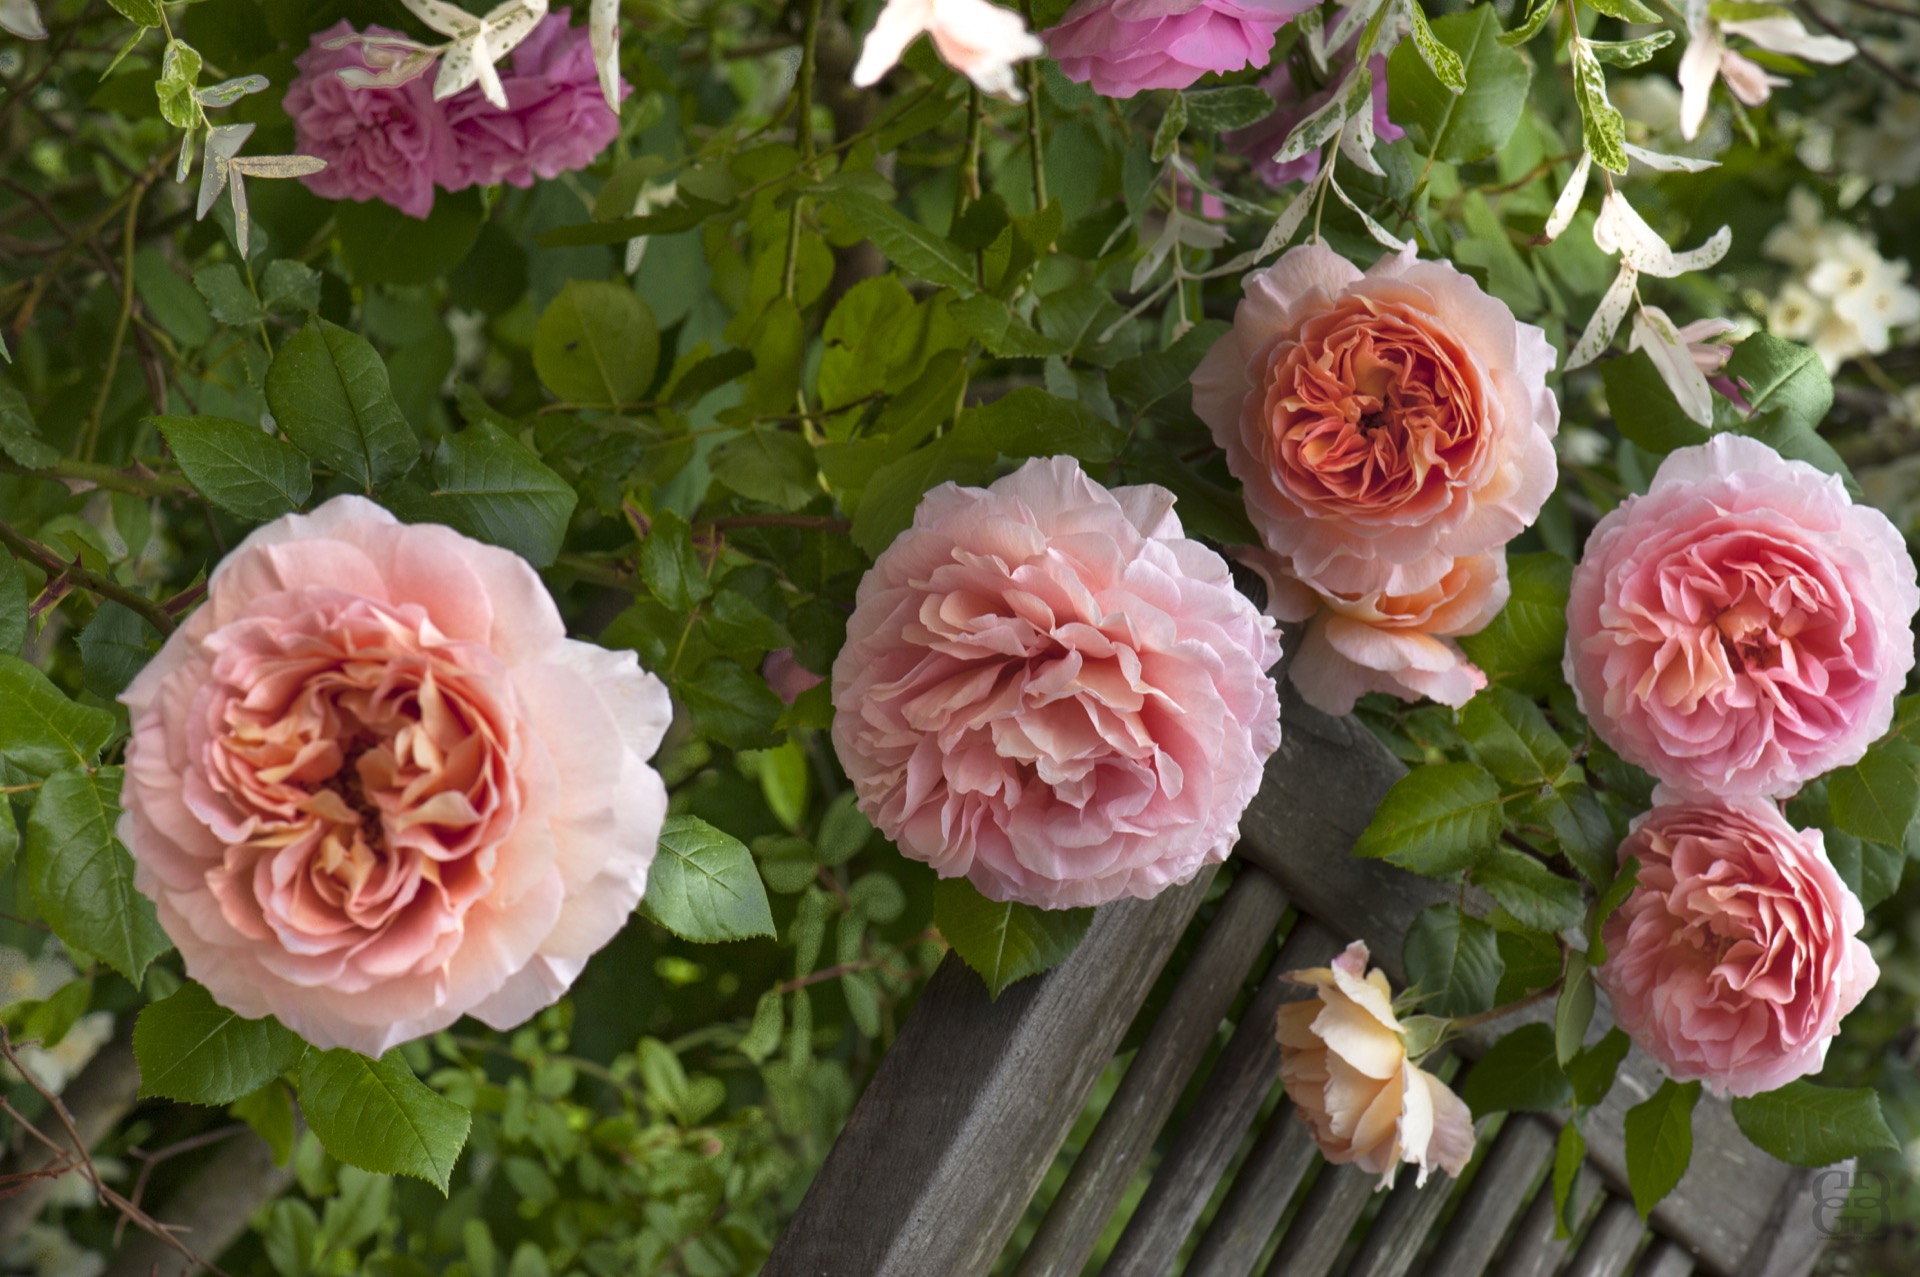 Le marcottage des rosiers anciens en particulier permet de reproduire des variétés rares. © Créafolios pour Futura, reproduction interdite